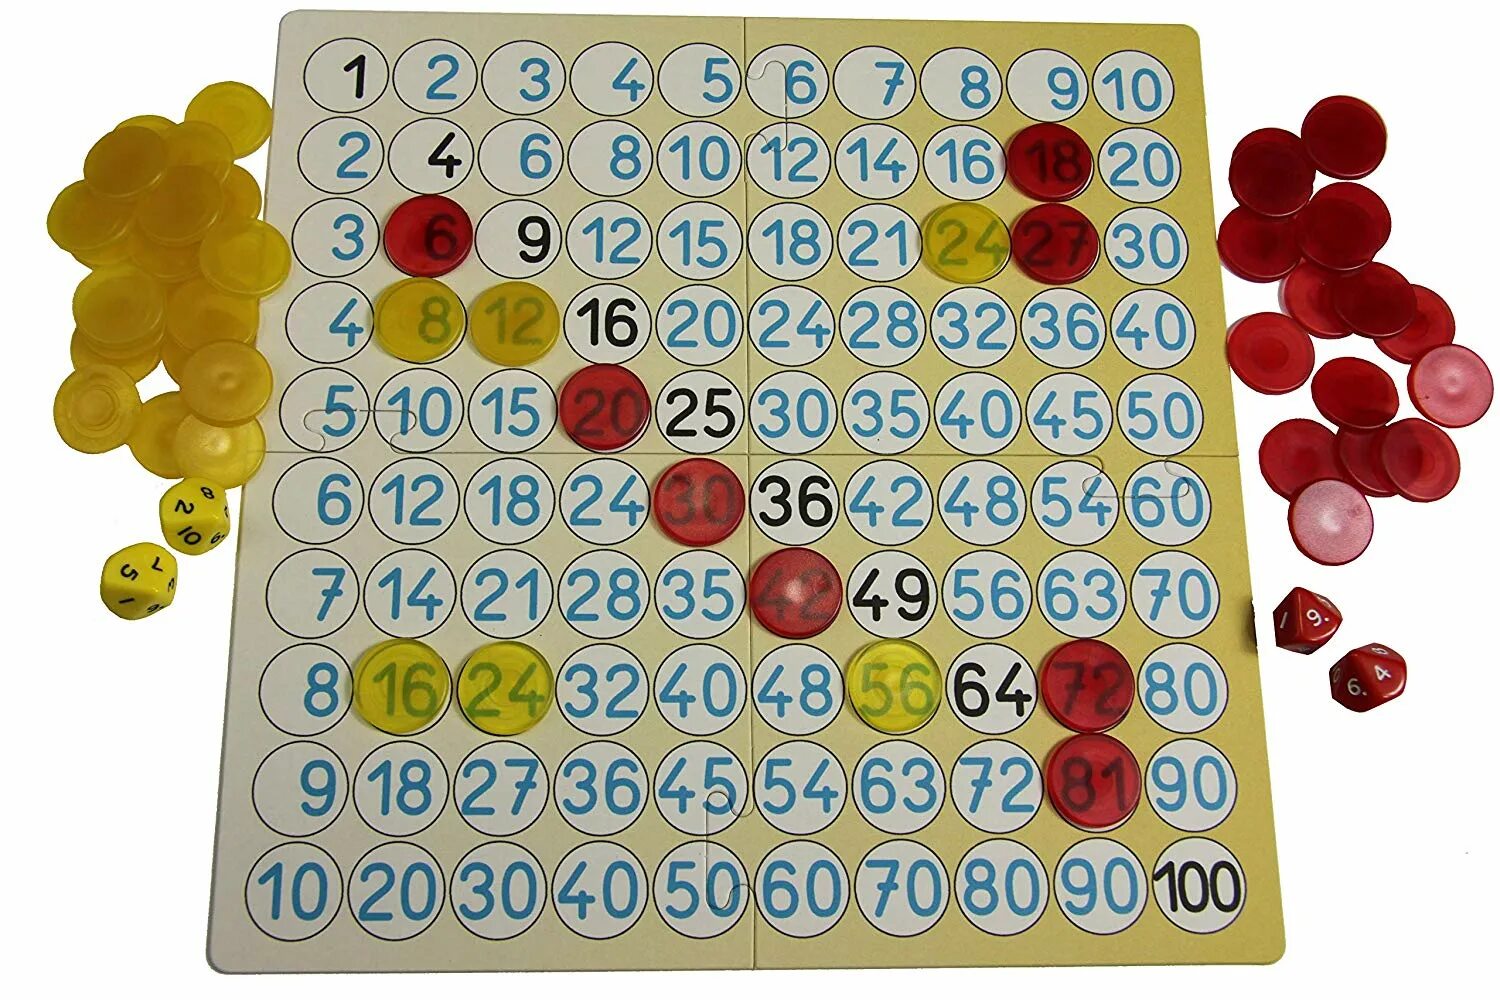 Игровая таблица умножения. Игры на умножение. Настольные игры на умножение. Изучение таблицы умножения в игровой форме.